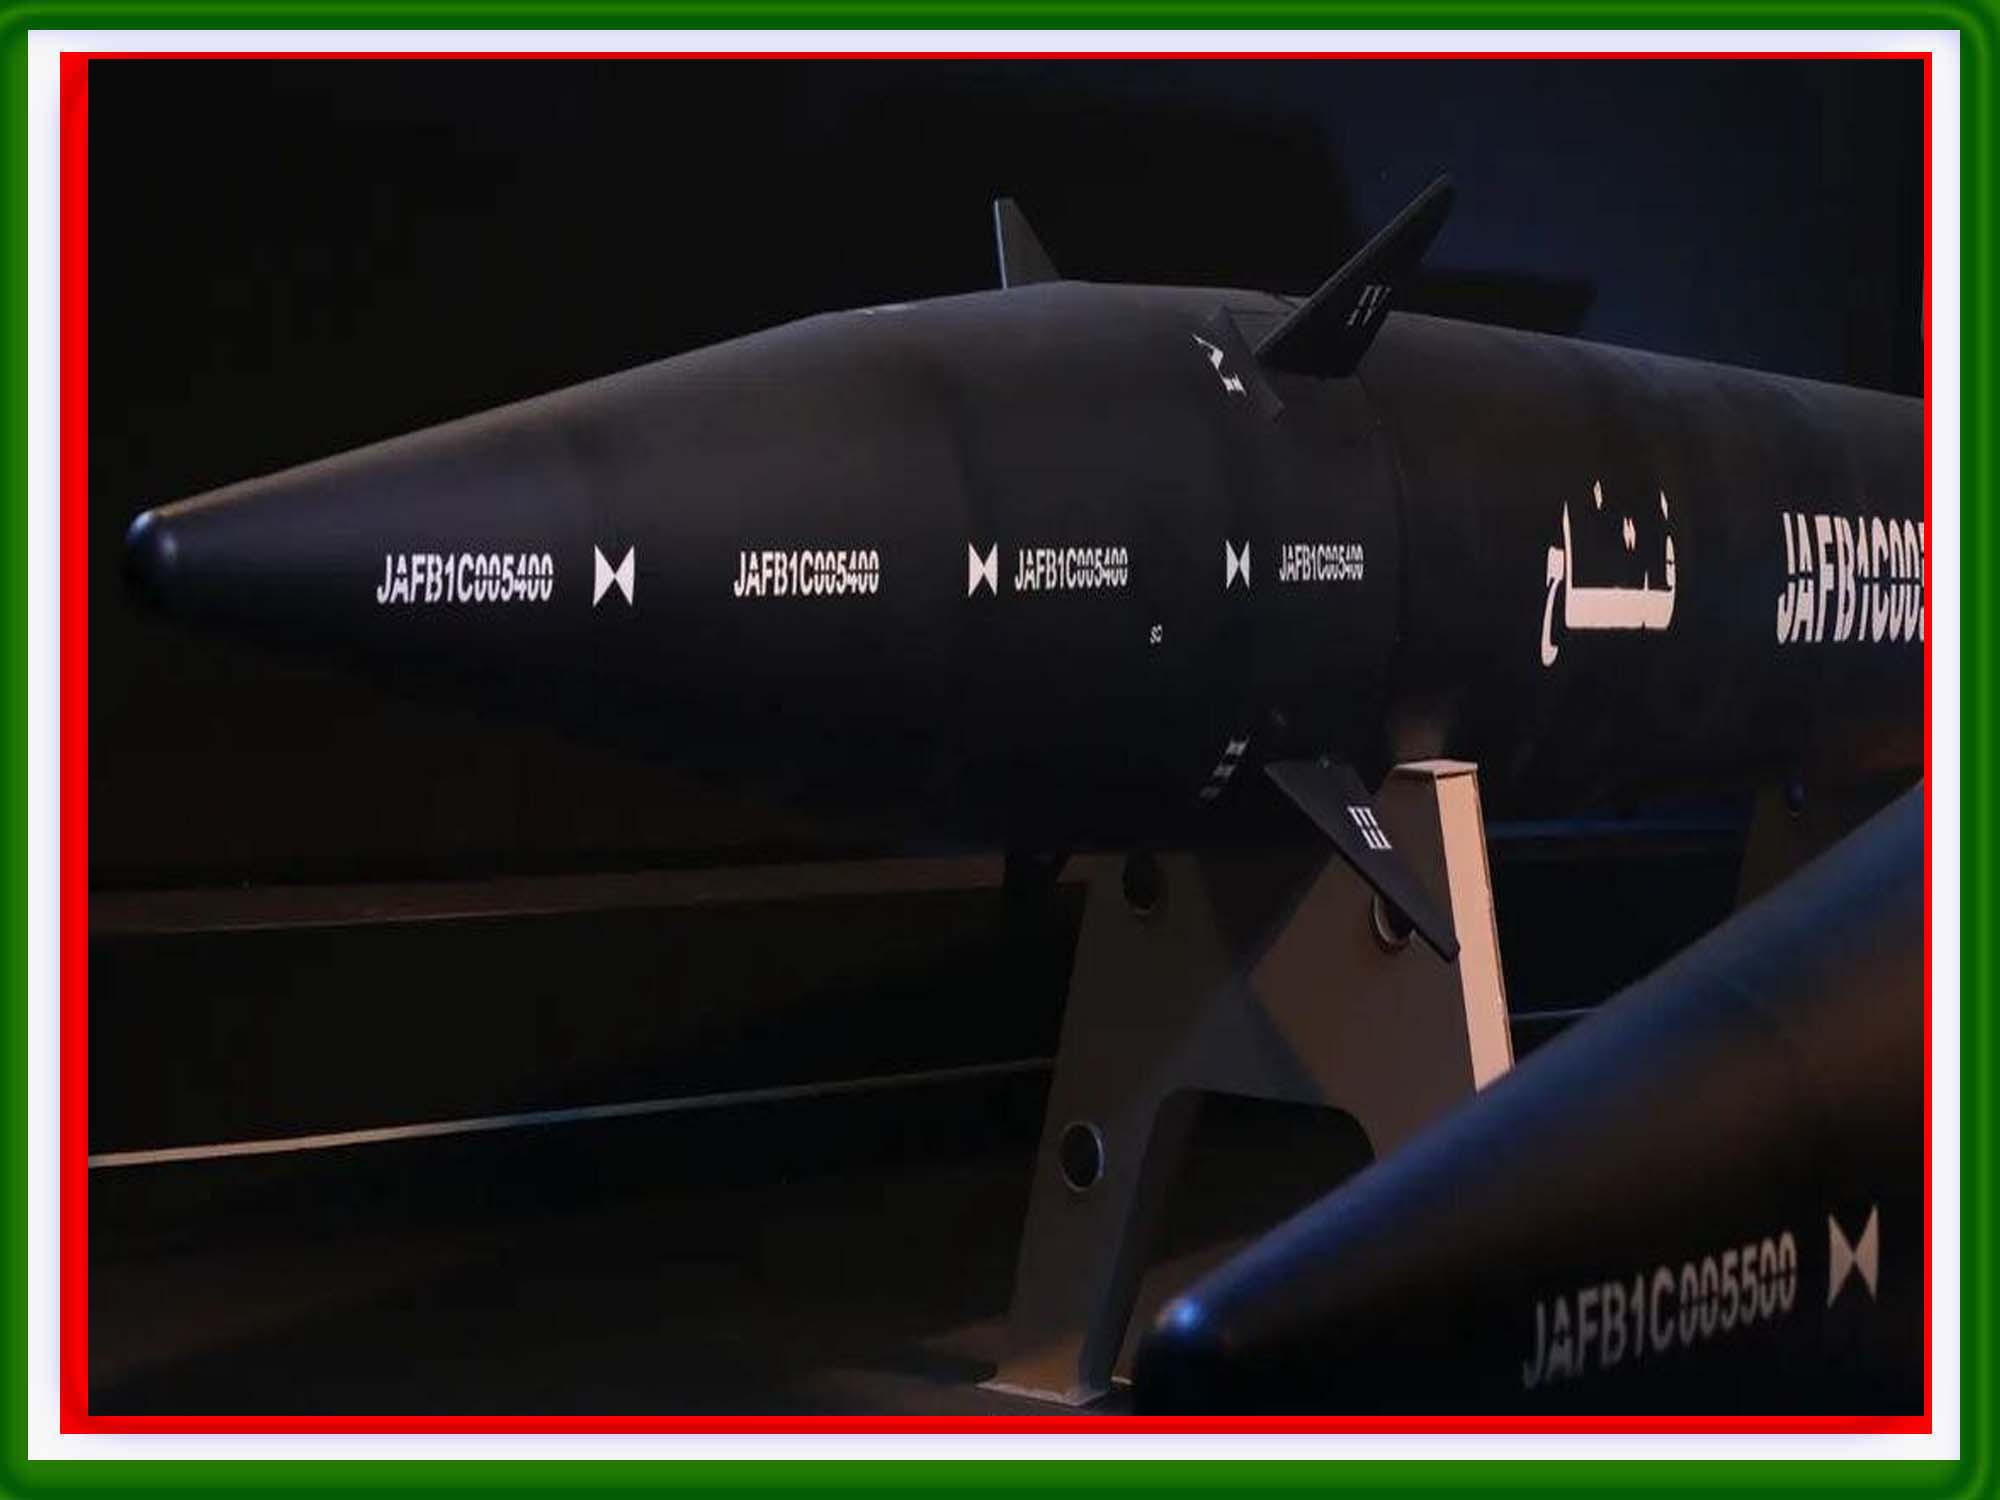 این موشک جدید قابلیت نفوذ به سامانه پدافند هوایی اسرائیل موسوم به توپ آهنین را دارد و اکنون در تلاش هستند برد موشک های مافوق صوت خود را به 2000 کیلومتر برسانند.